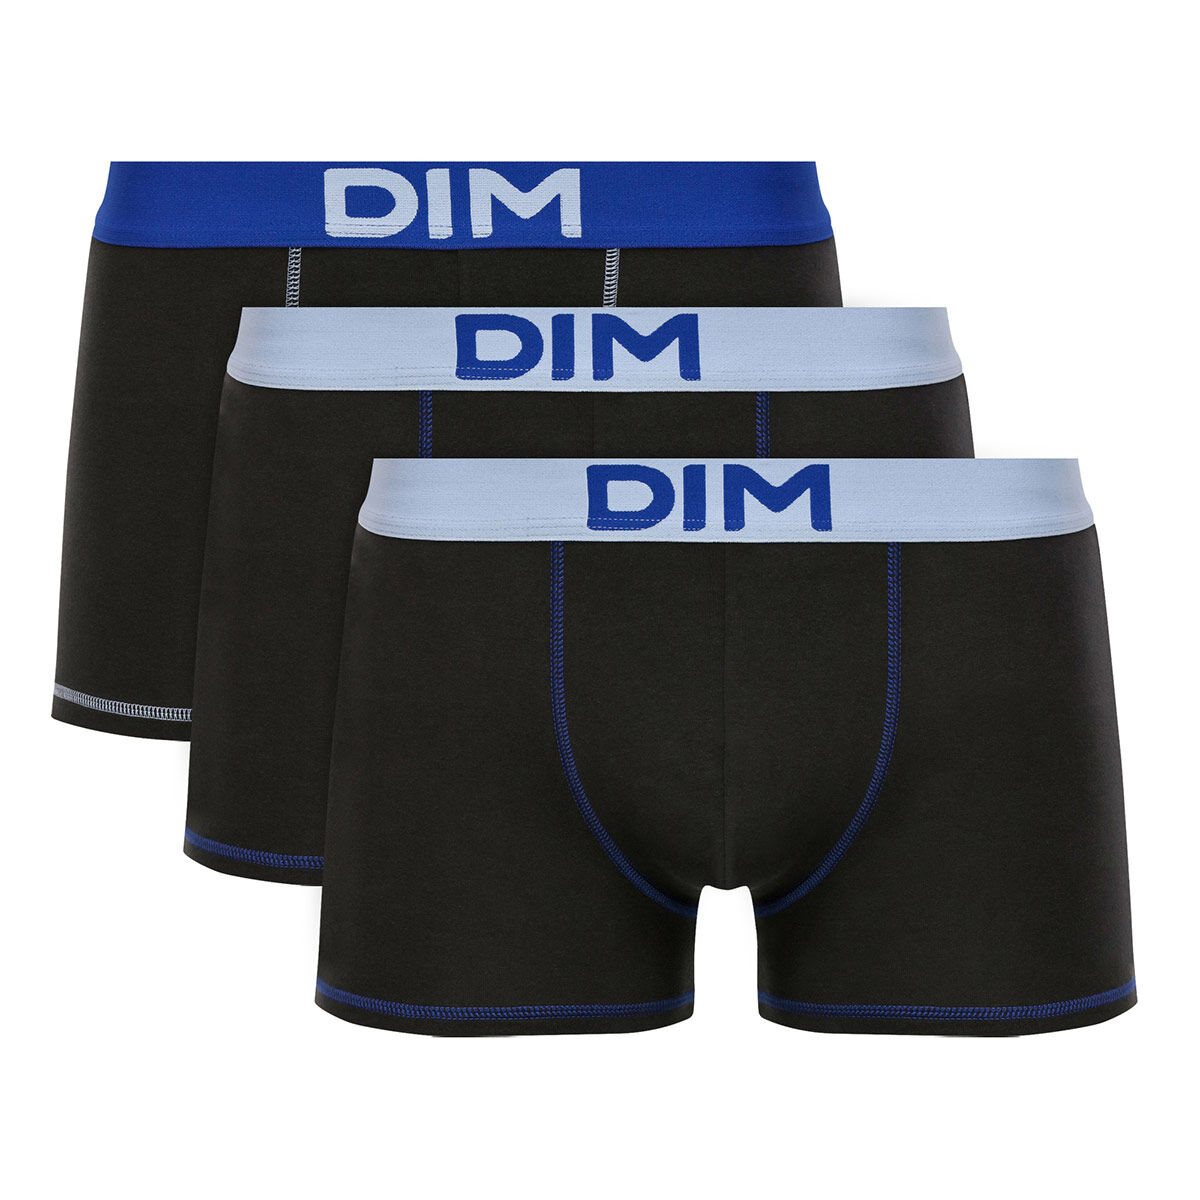 DIM Homme Vêtements Sous-vêtements Culottes & Bas Shortys Boxer homme en coton modal Bleu Céladon à ceinture noire Classic 